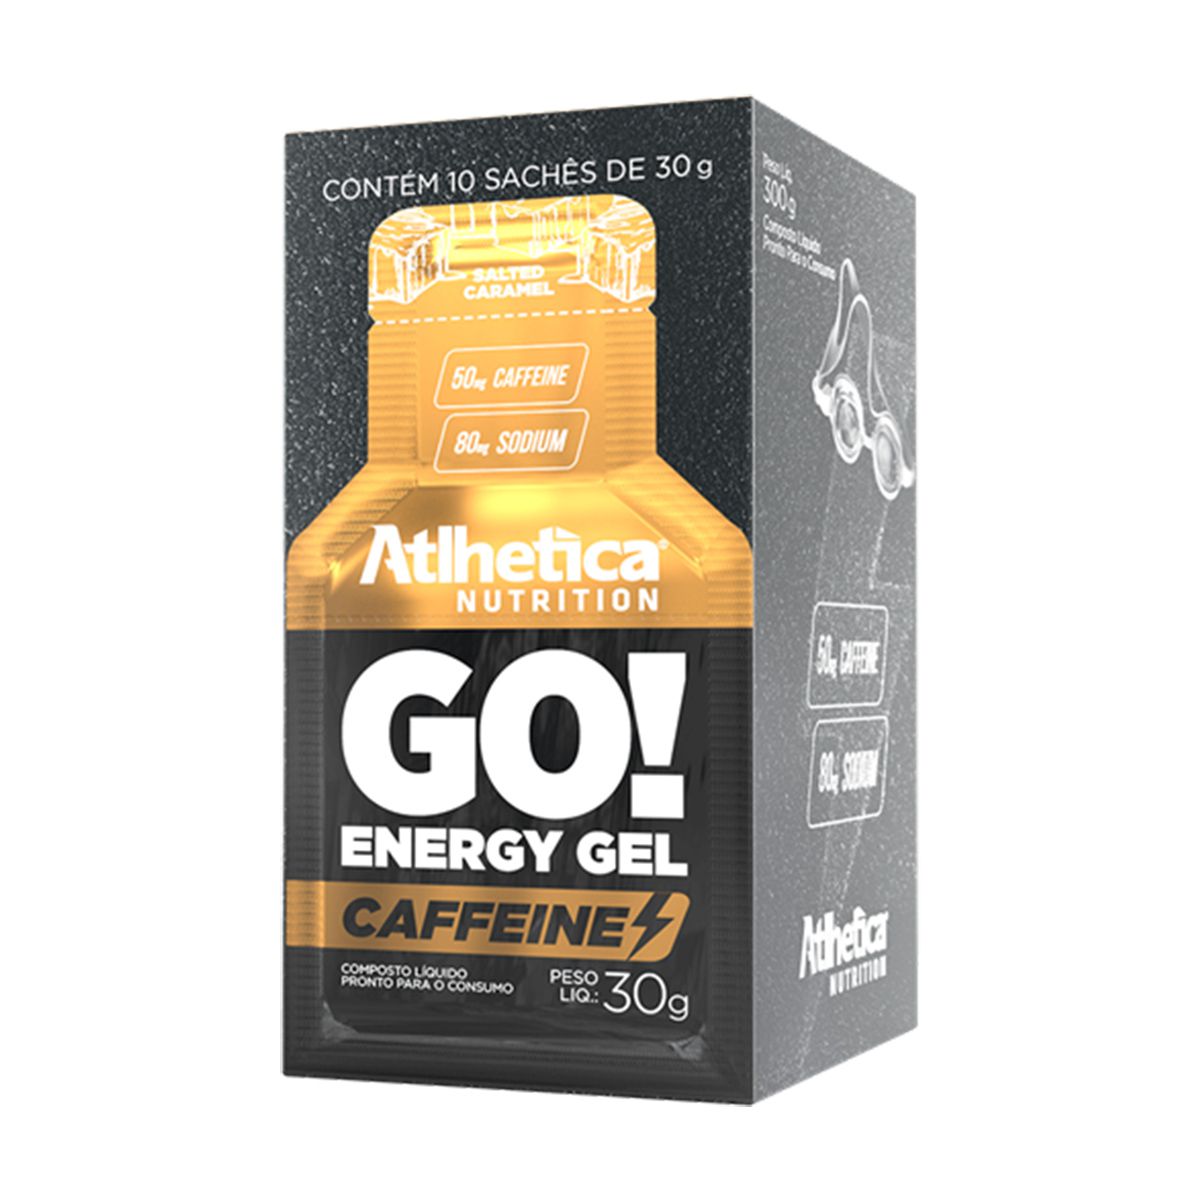 Go Energy Gel Caffeine - 10 saches/30g